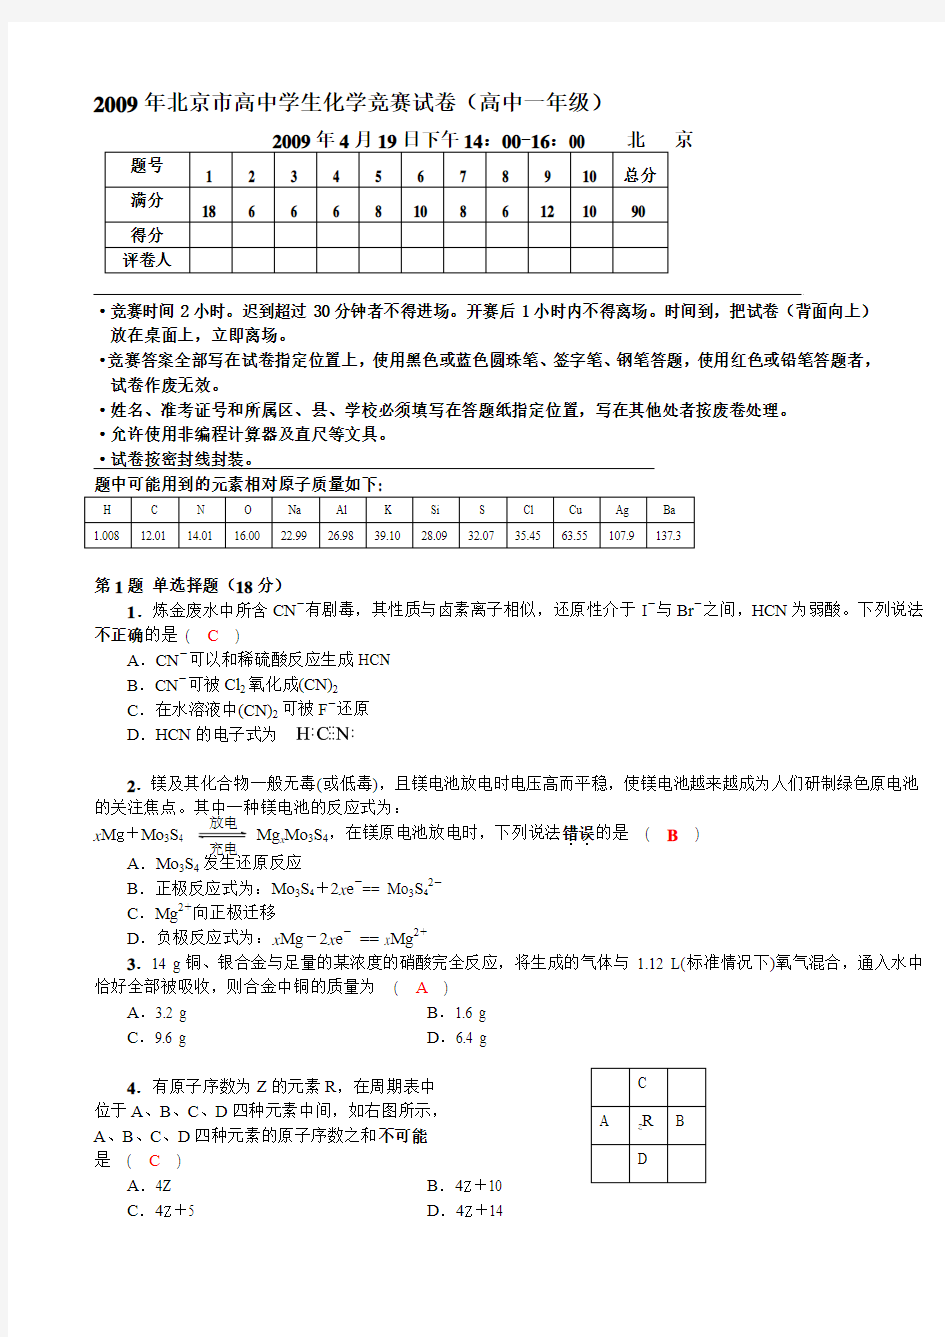 2009年北京市高中学生化学竞赛试卷(高中